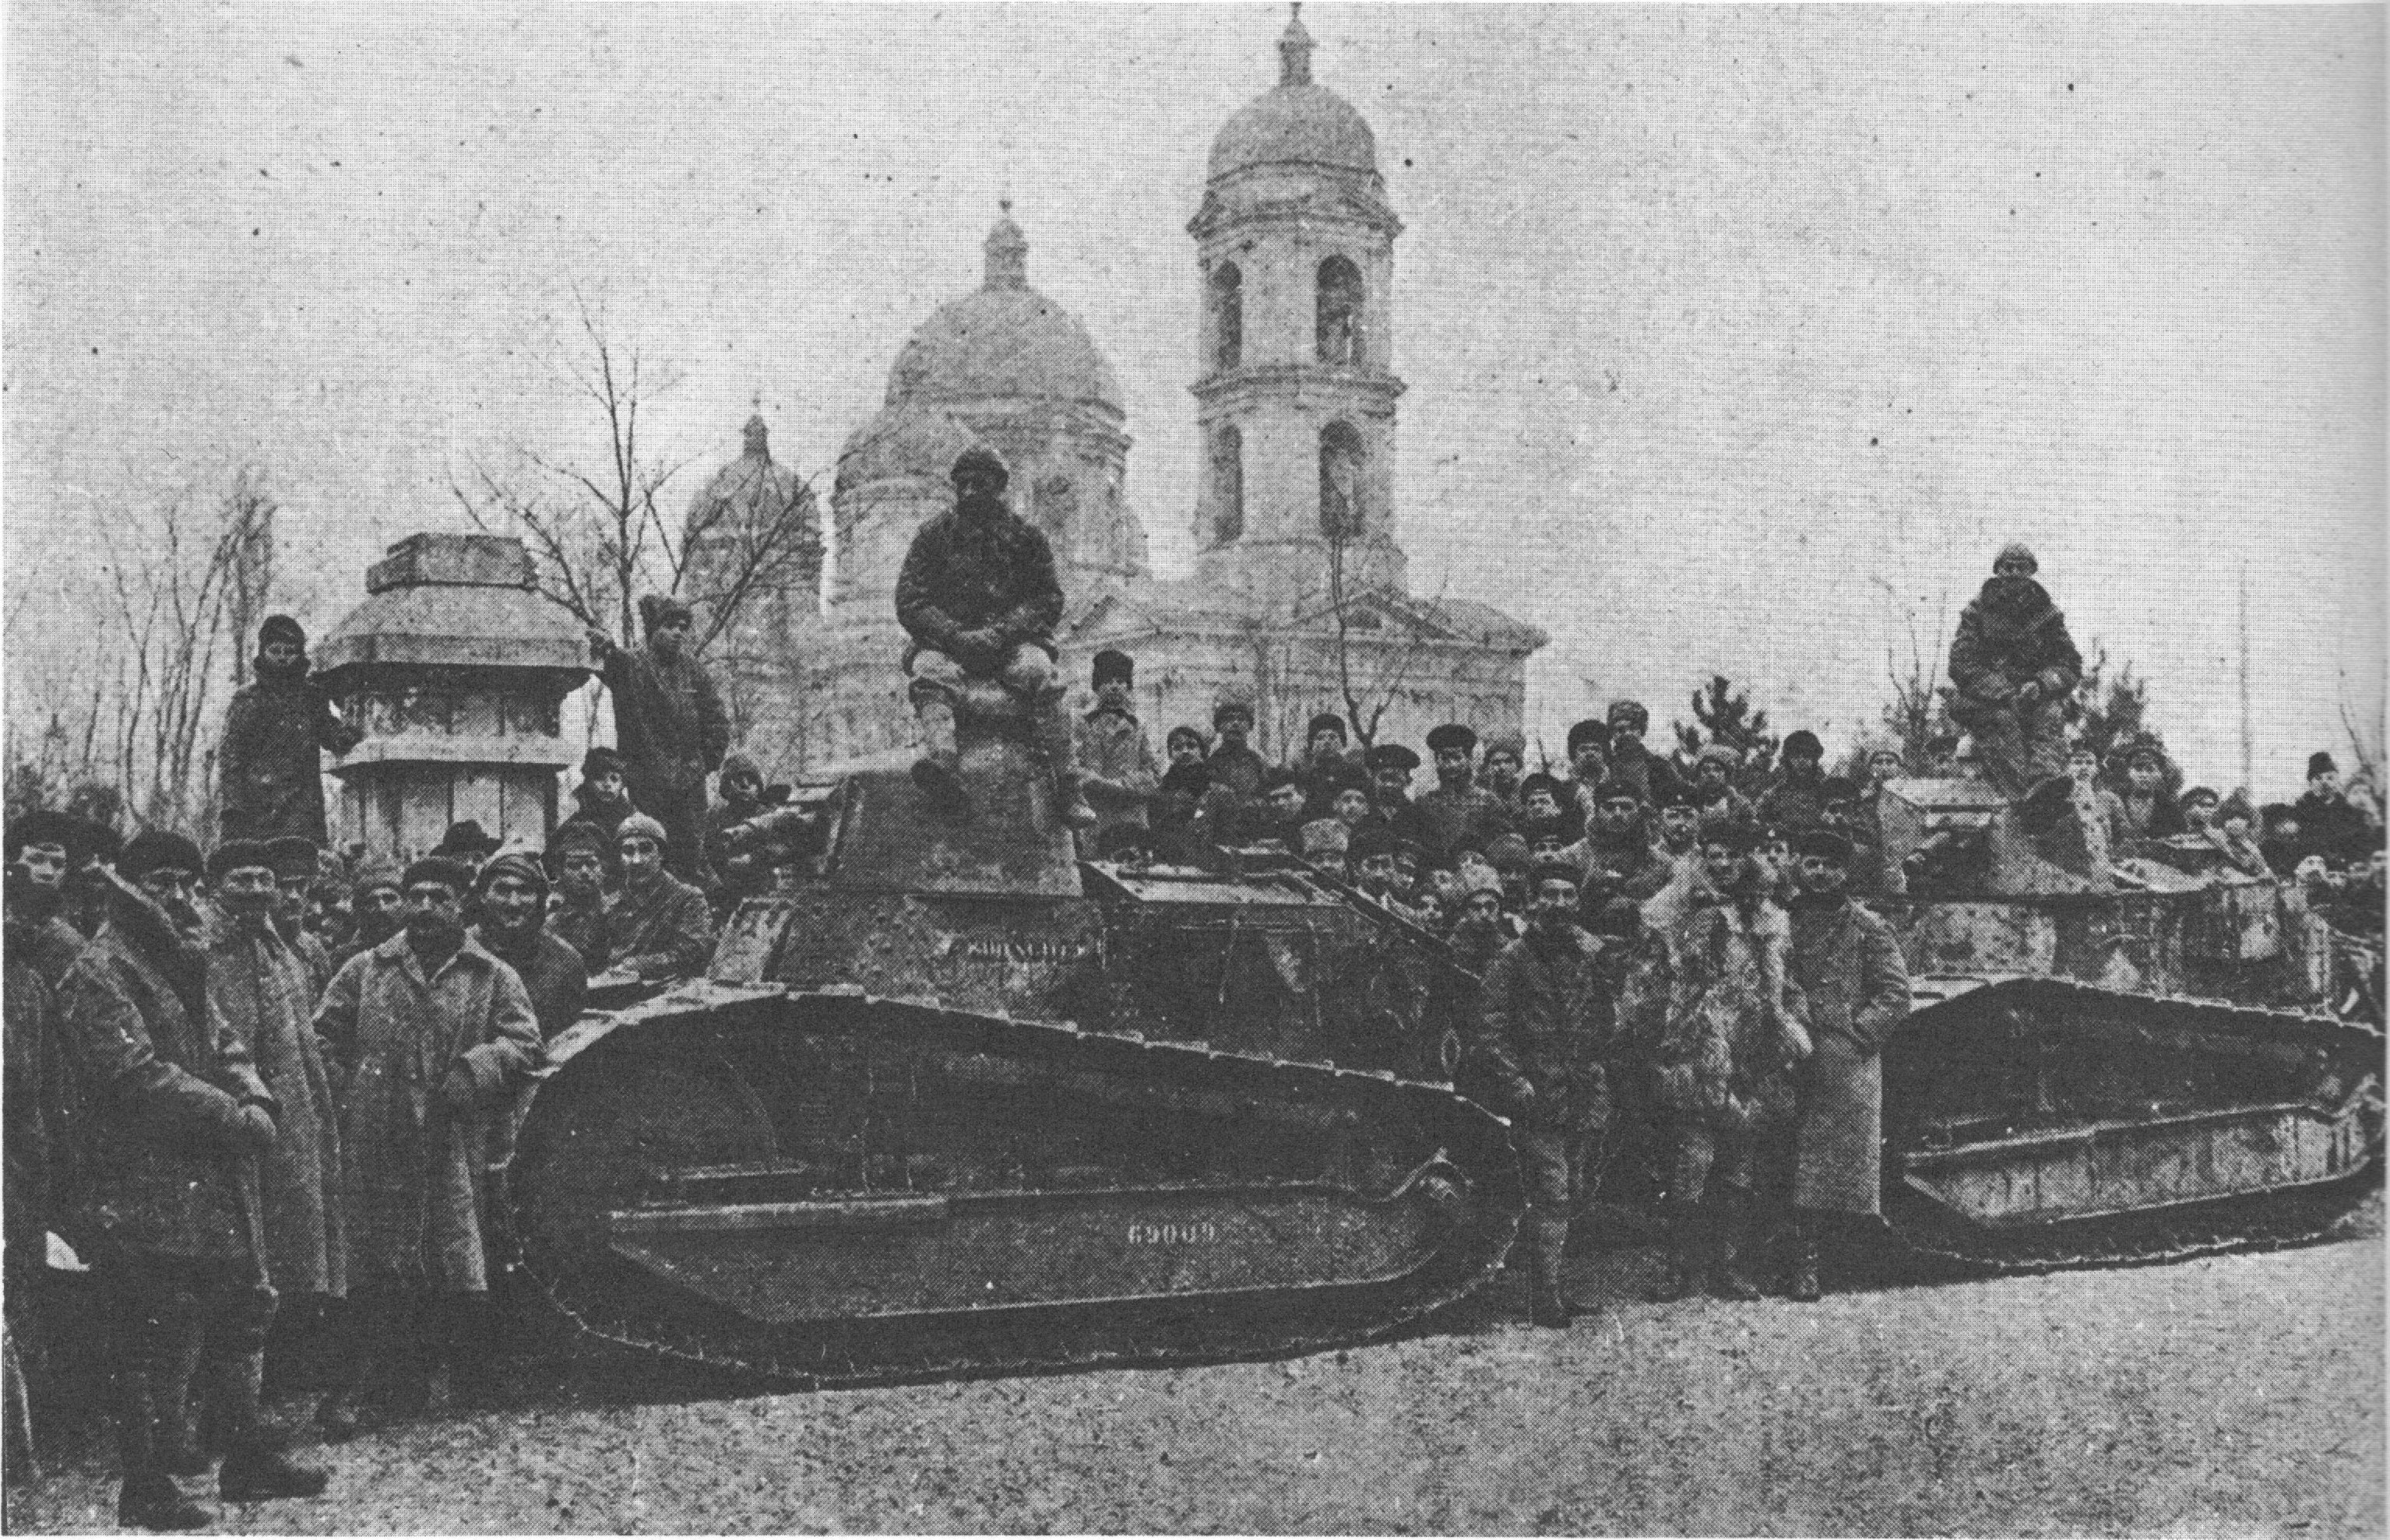 Танки "Рено" в руках григорьевцев весной 1919 года